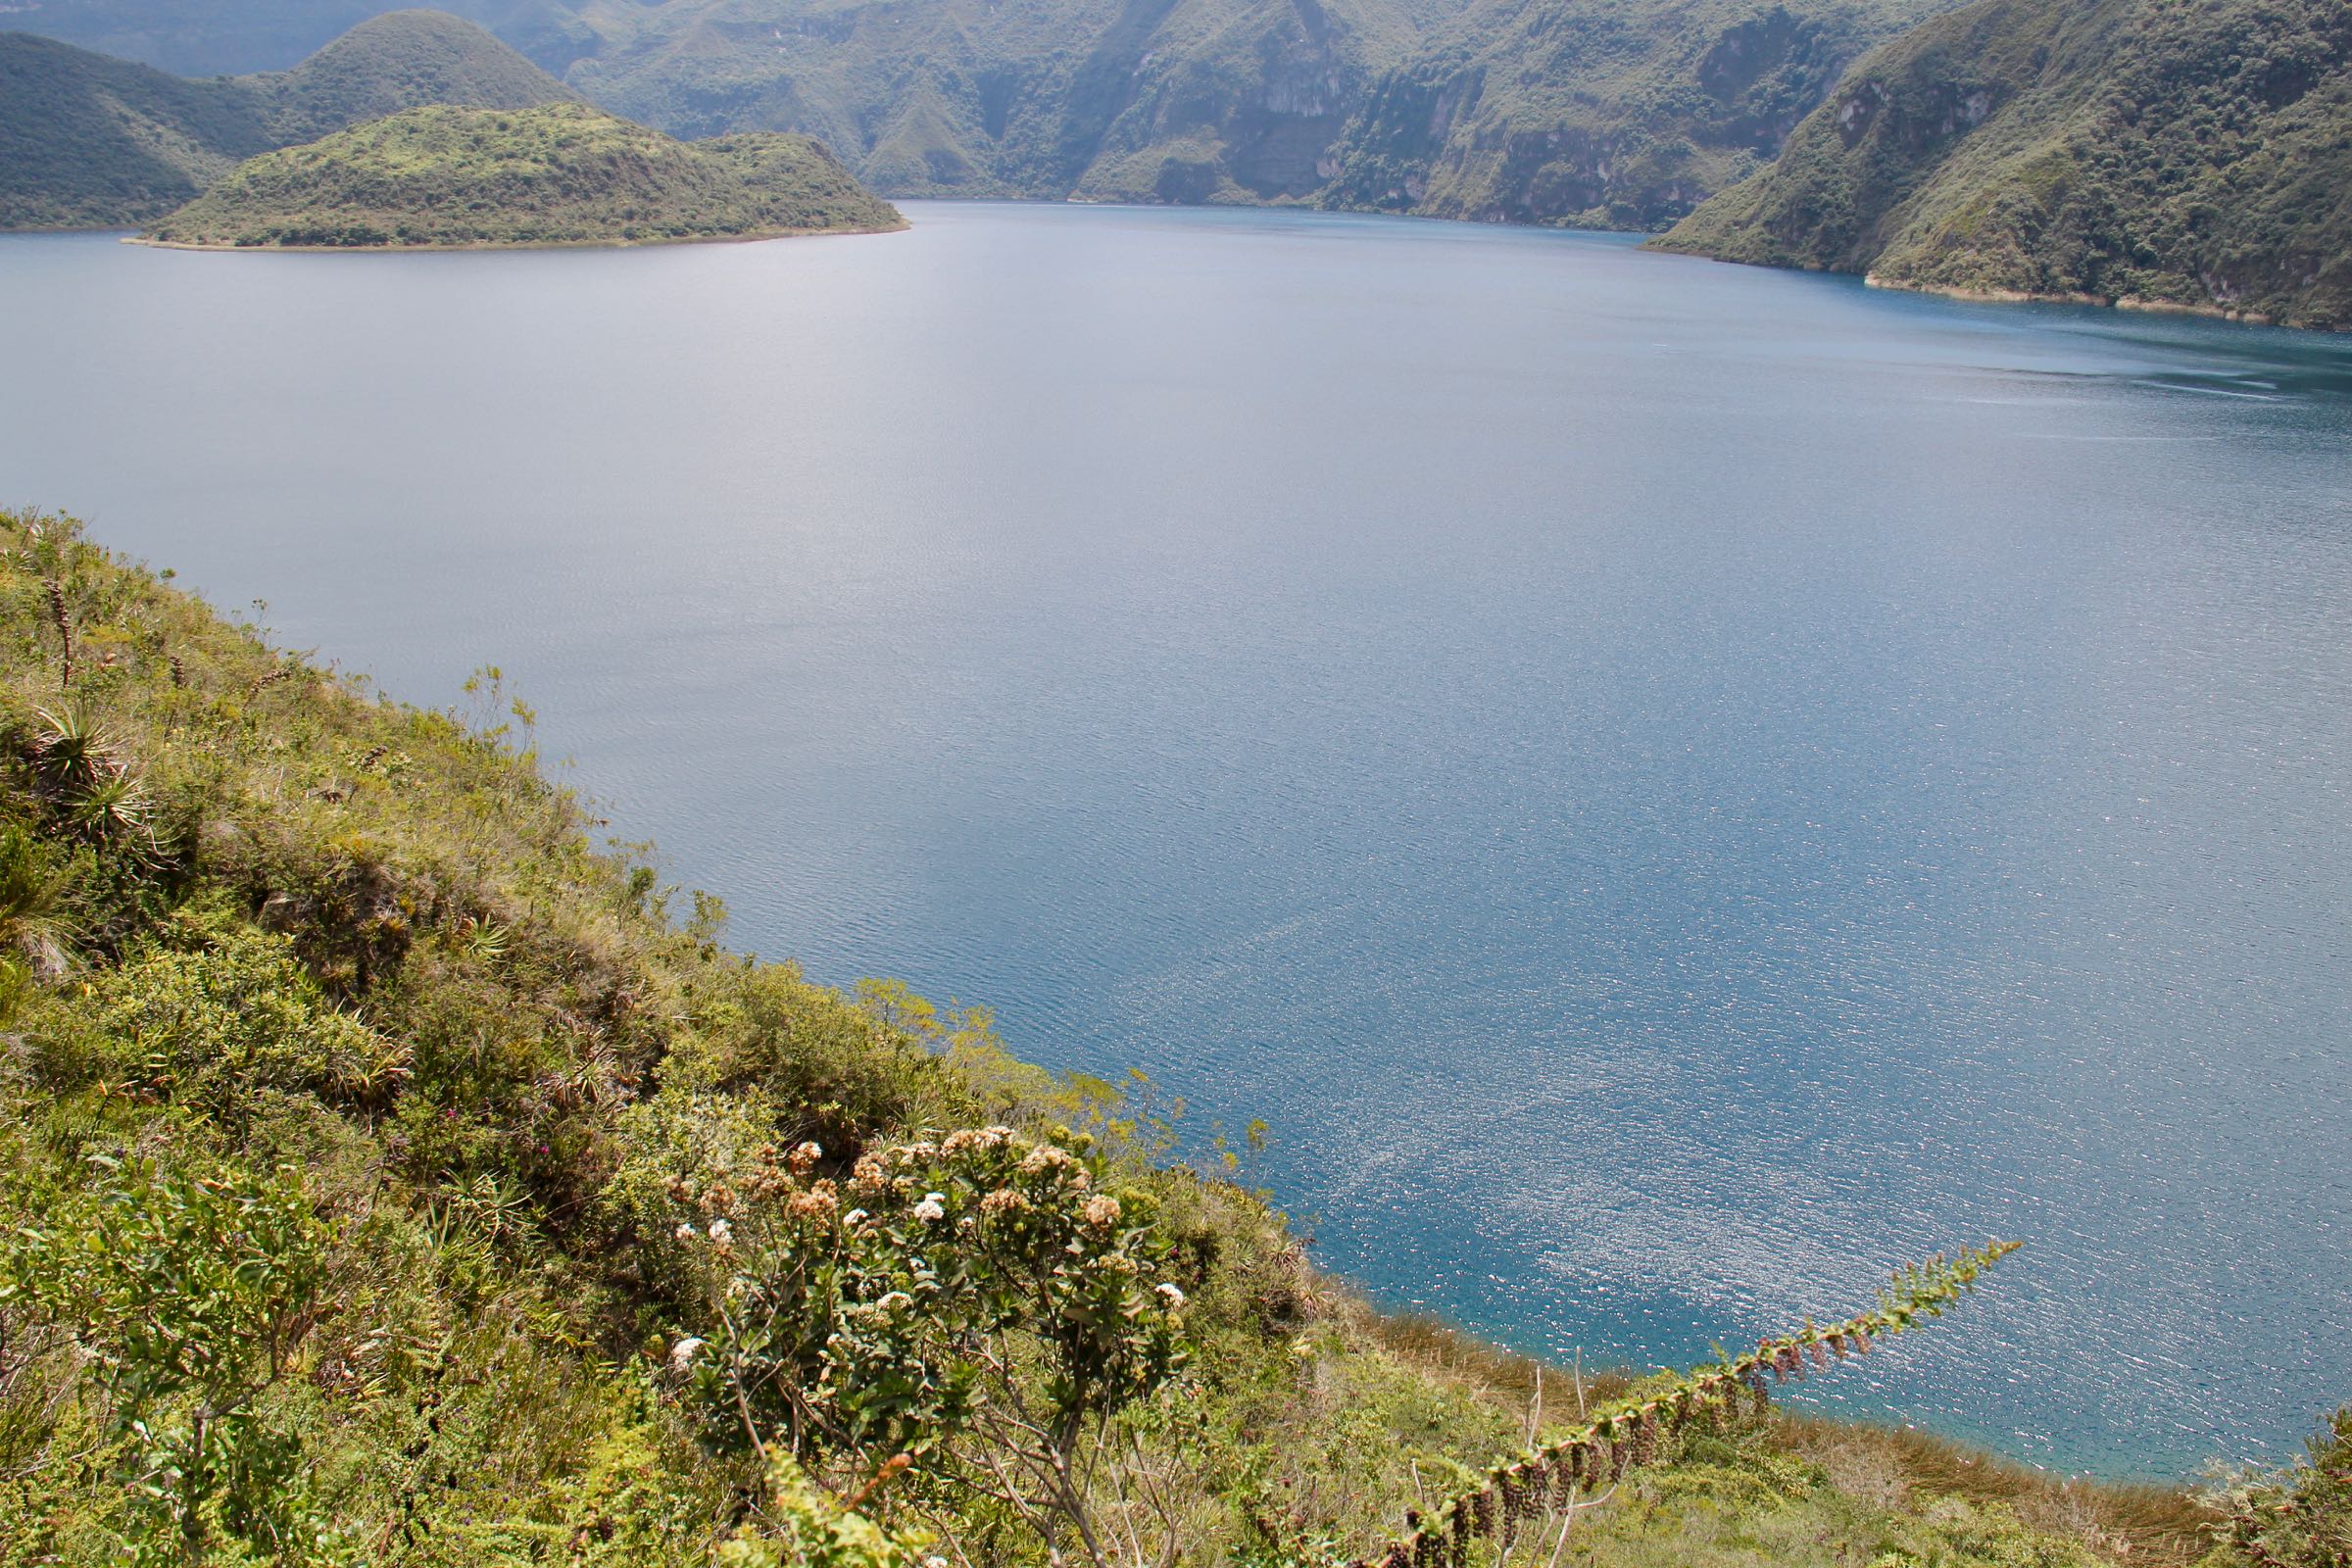 Blick auf den Kratersee Cuicocha, Ecuador